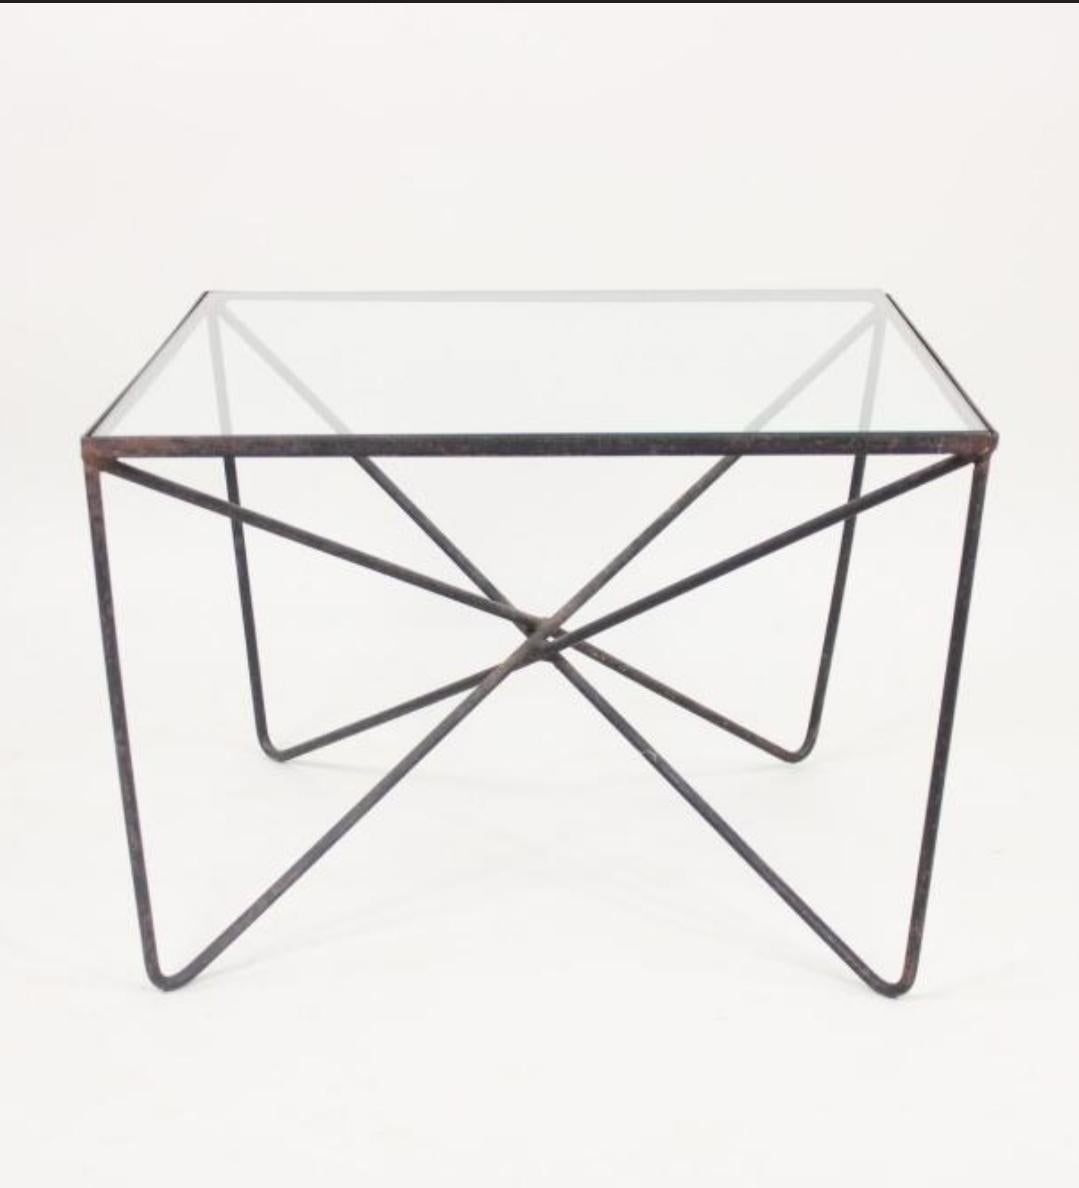 Table minimaliste avec structure en fer forgé soudé et plateau en verre. Américain par Luther Conover, années 1950
Dimensions : 15,5 h x 22,5 l x 22,5 p : 15,5h x 22,5w x 22,5d.
Cet article peut être vu en personne aux Berkshire Galleries de Great